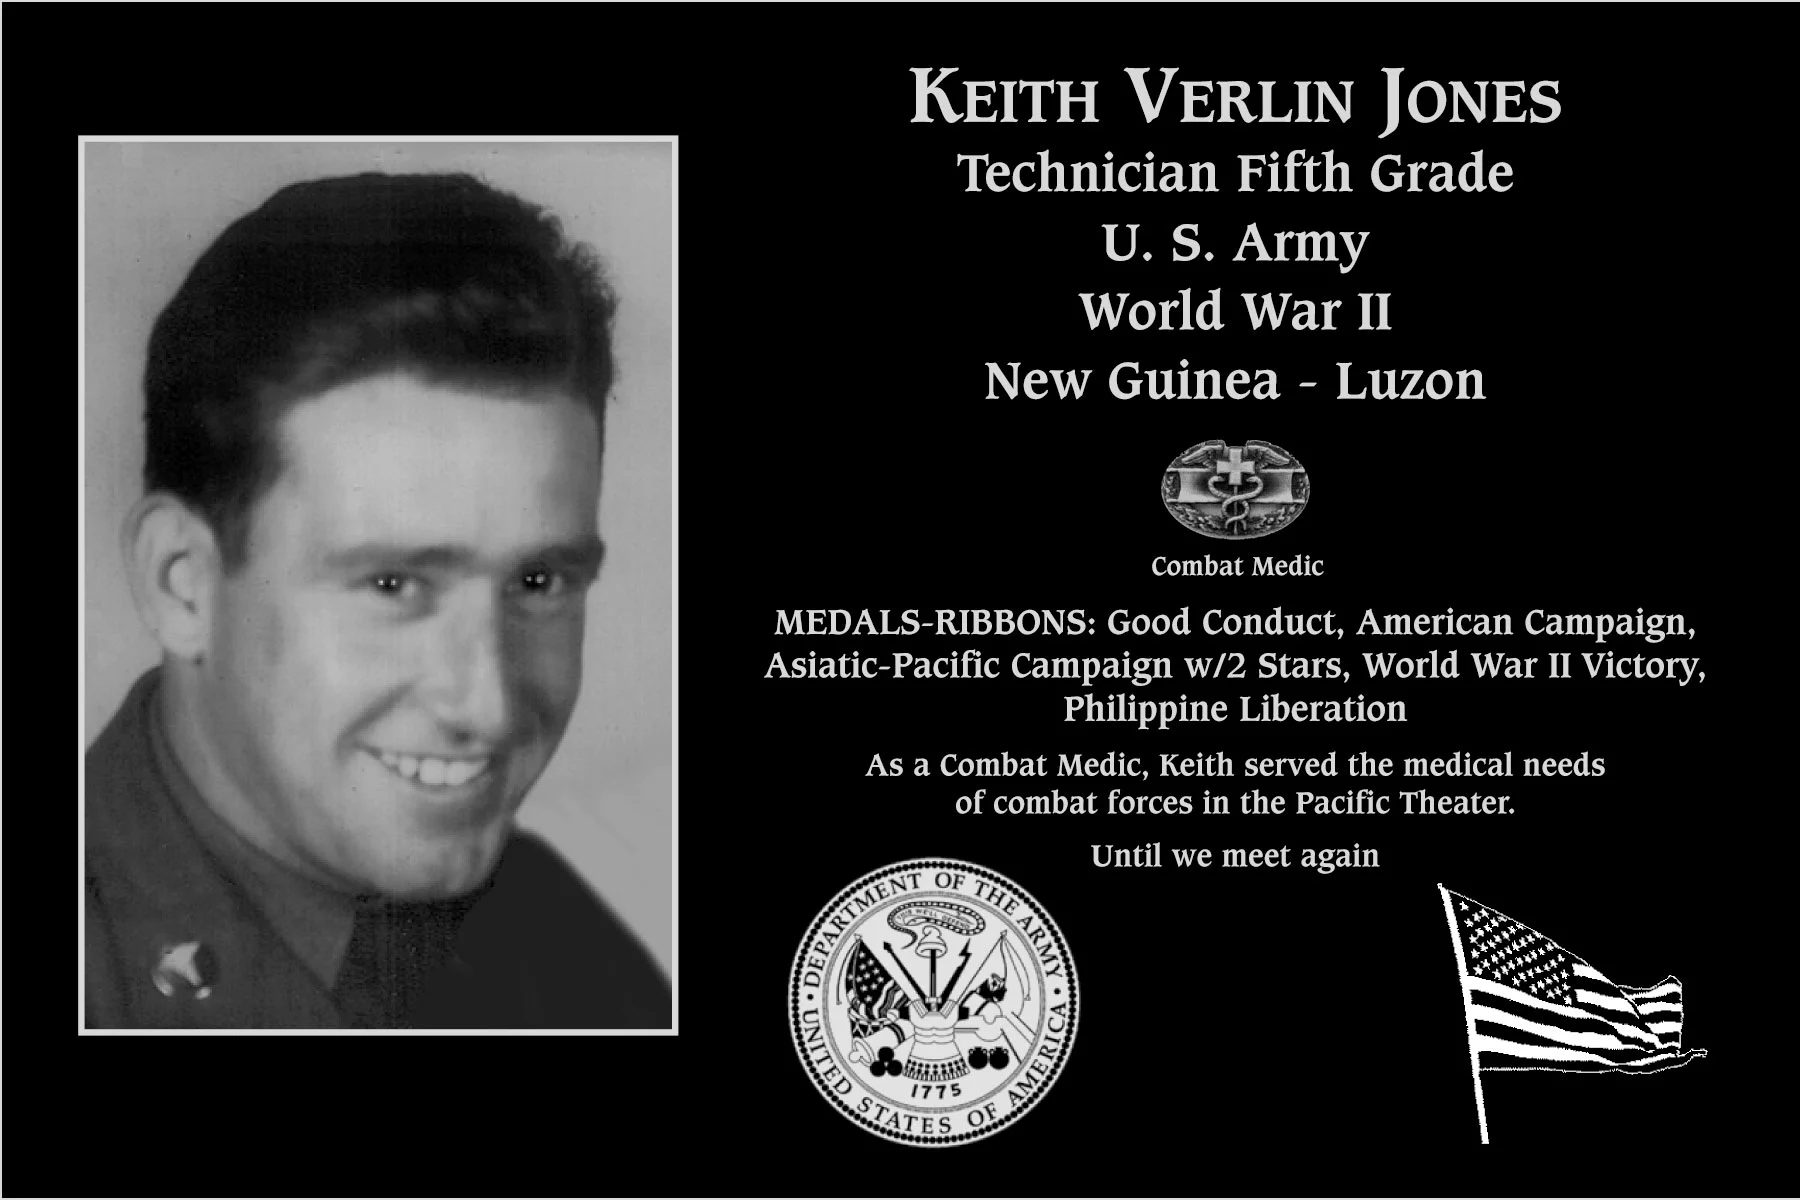 Keith Verlin Jones